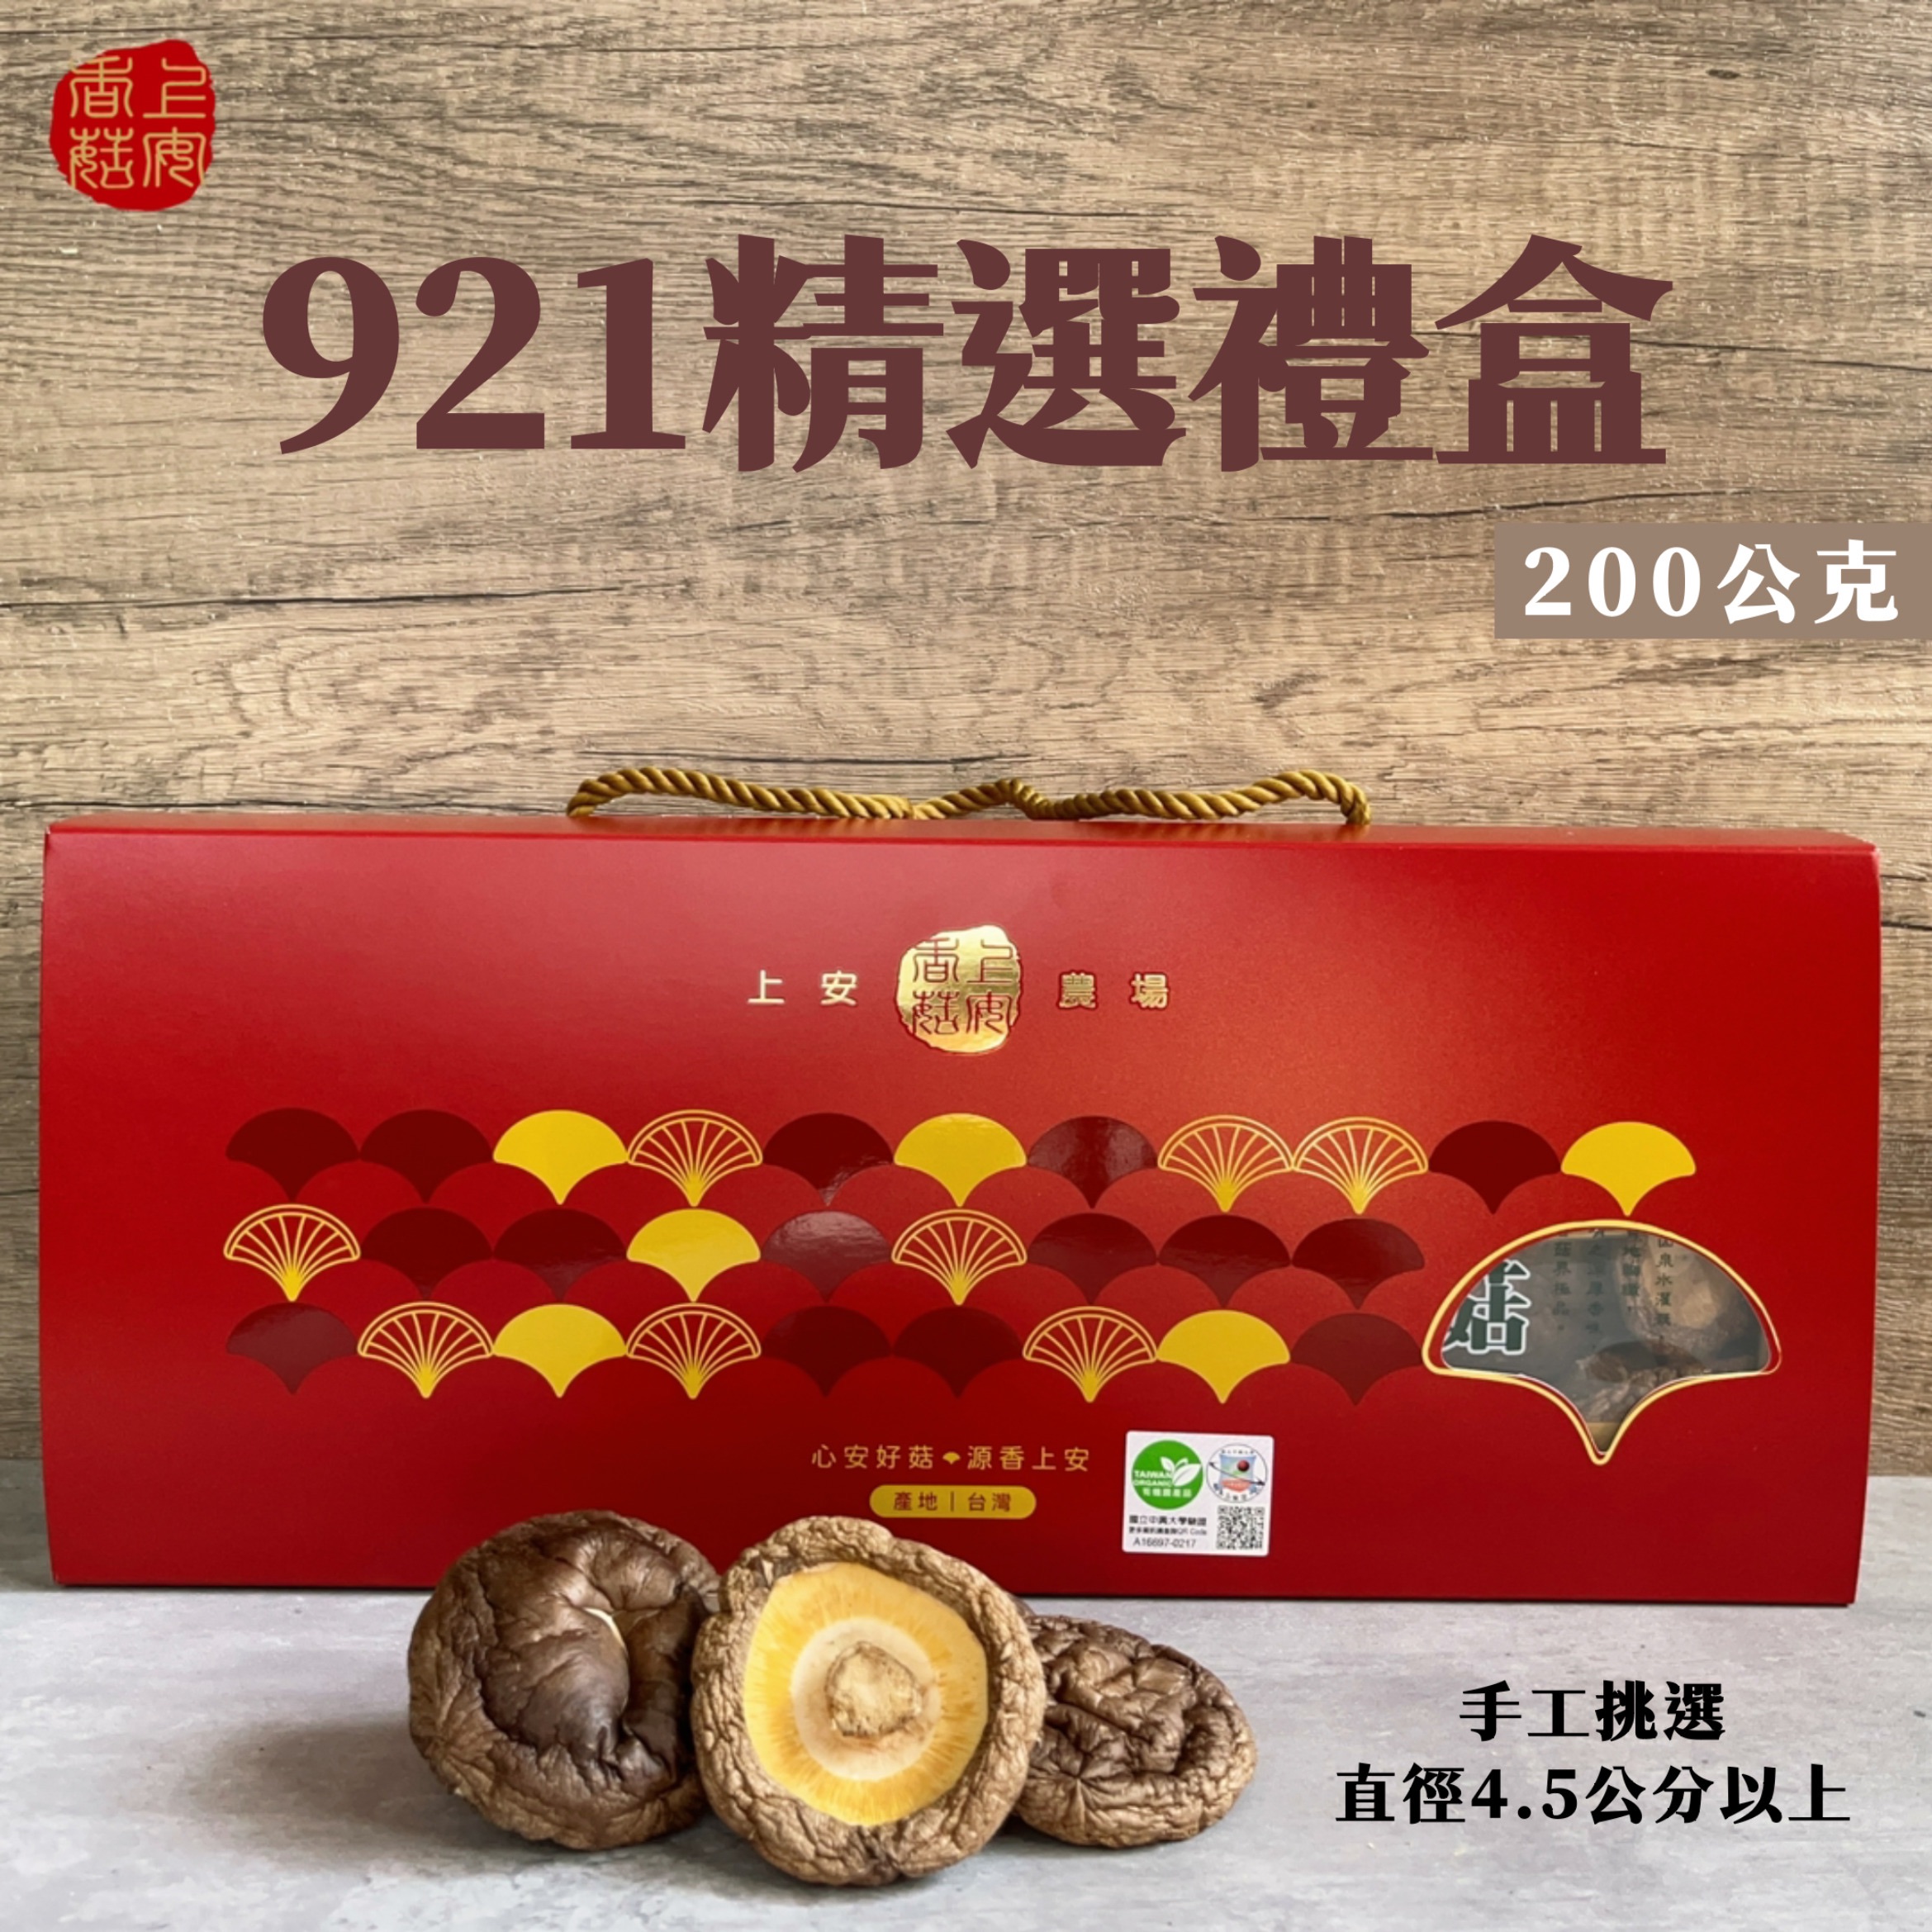 【有機香菇】921品種有機乾香菇-精選禮盒